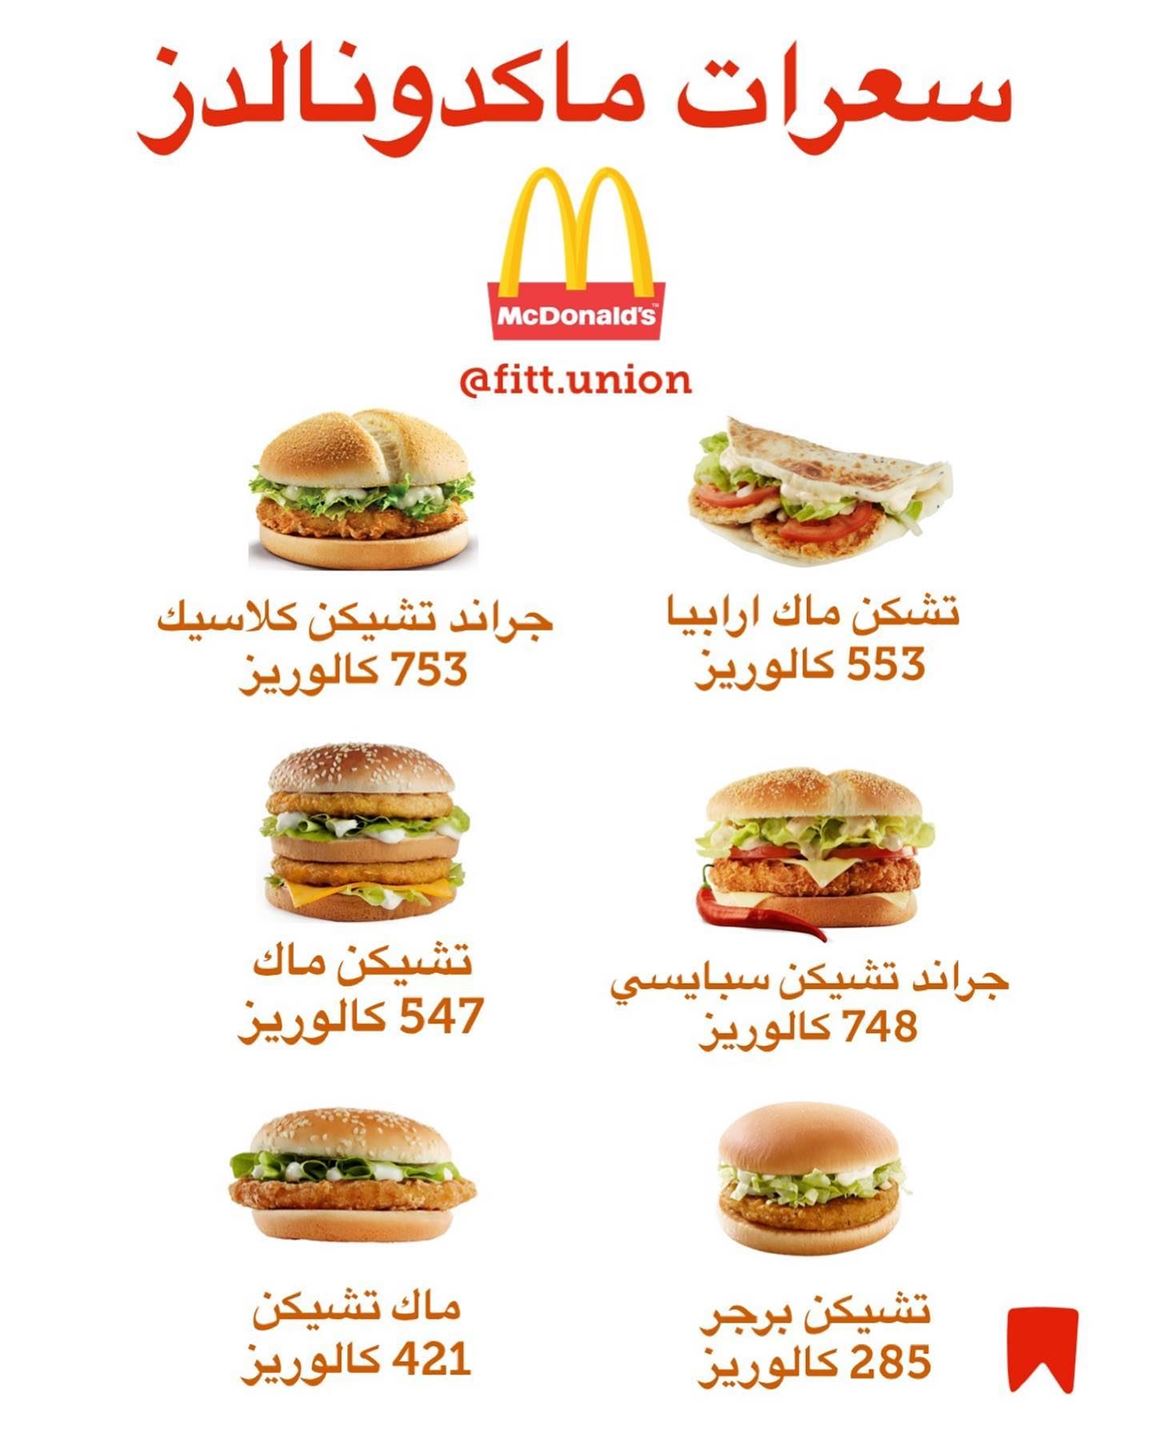 السعرات الحرارية في بعض انواع برجر اللحم والدجاج من مطعم ماكدونالدز